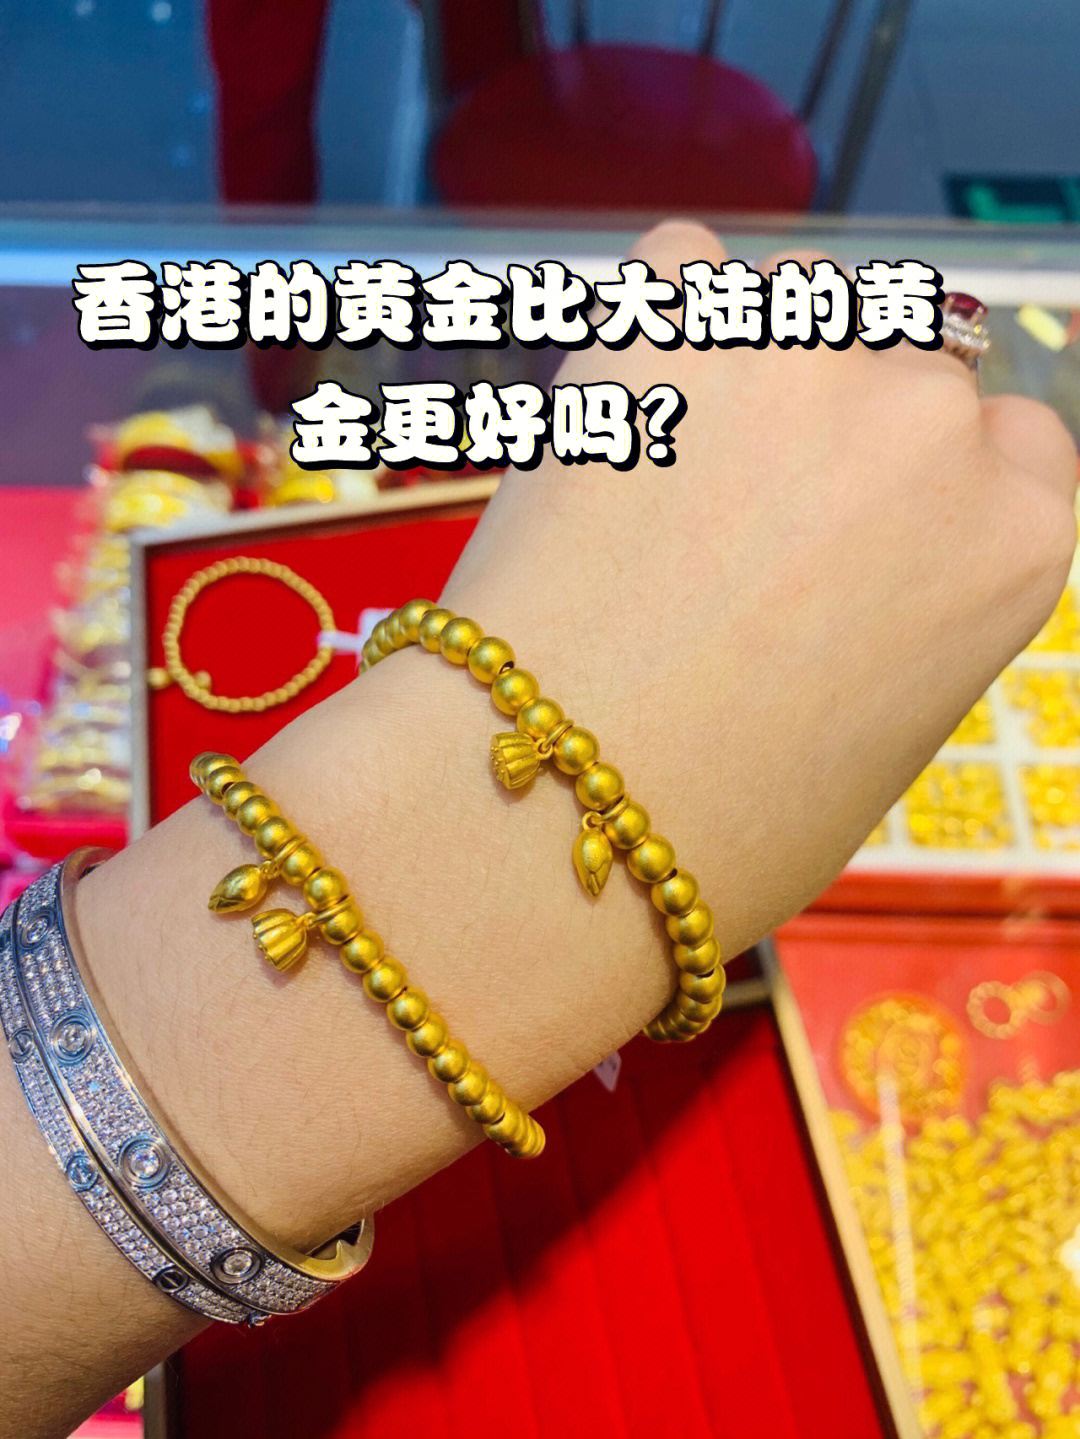 老一辈的人普遍都认为香港黄金比大陆黄金更纯更真,其实这种思想已经